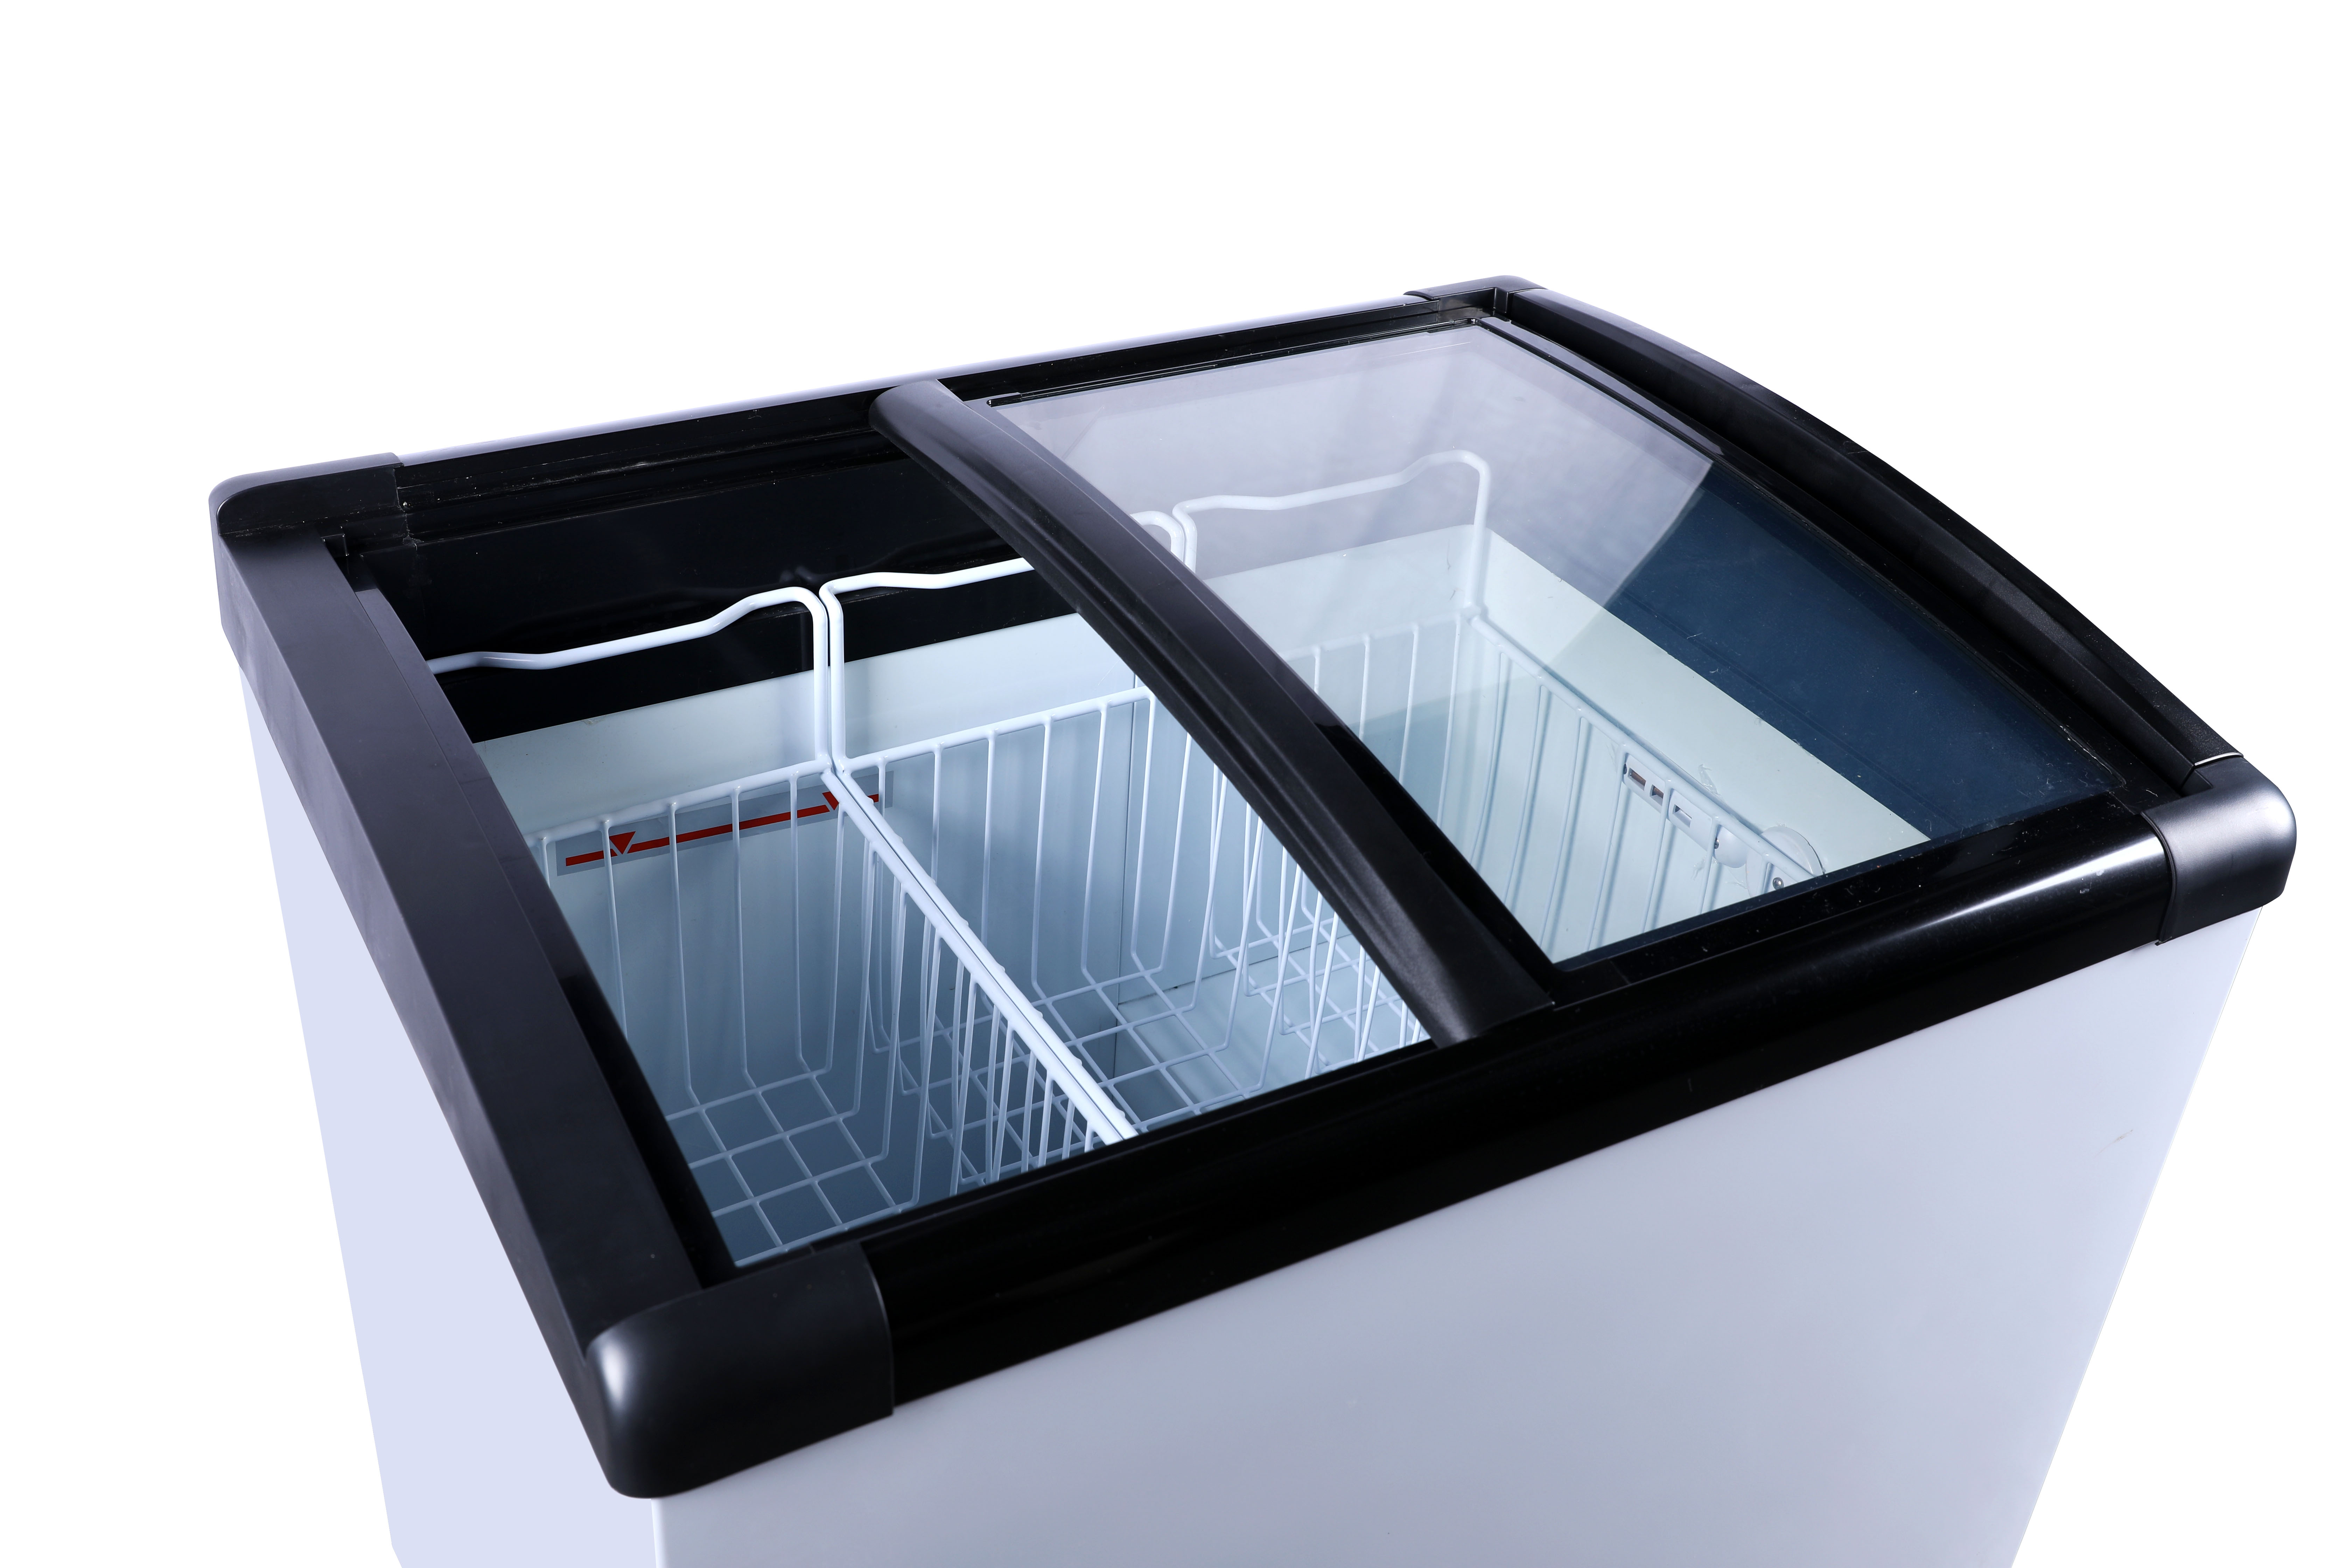 Showcase Freezer/Curved Glass Lids Freezer/Glass Door Freezer/Icecream Freezer Showcase